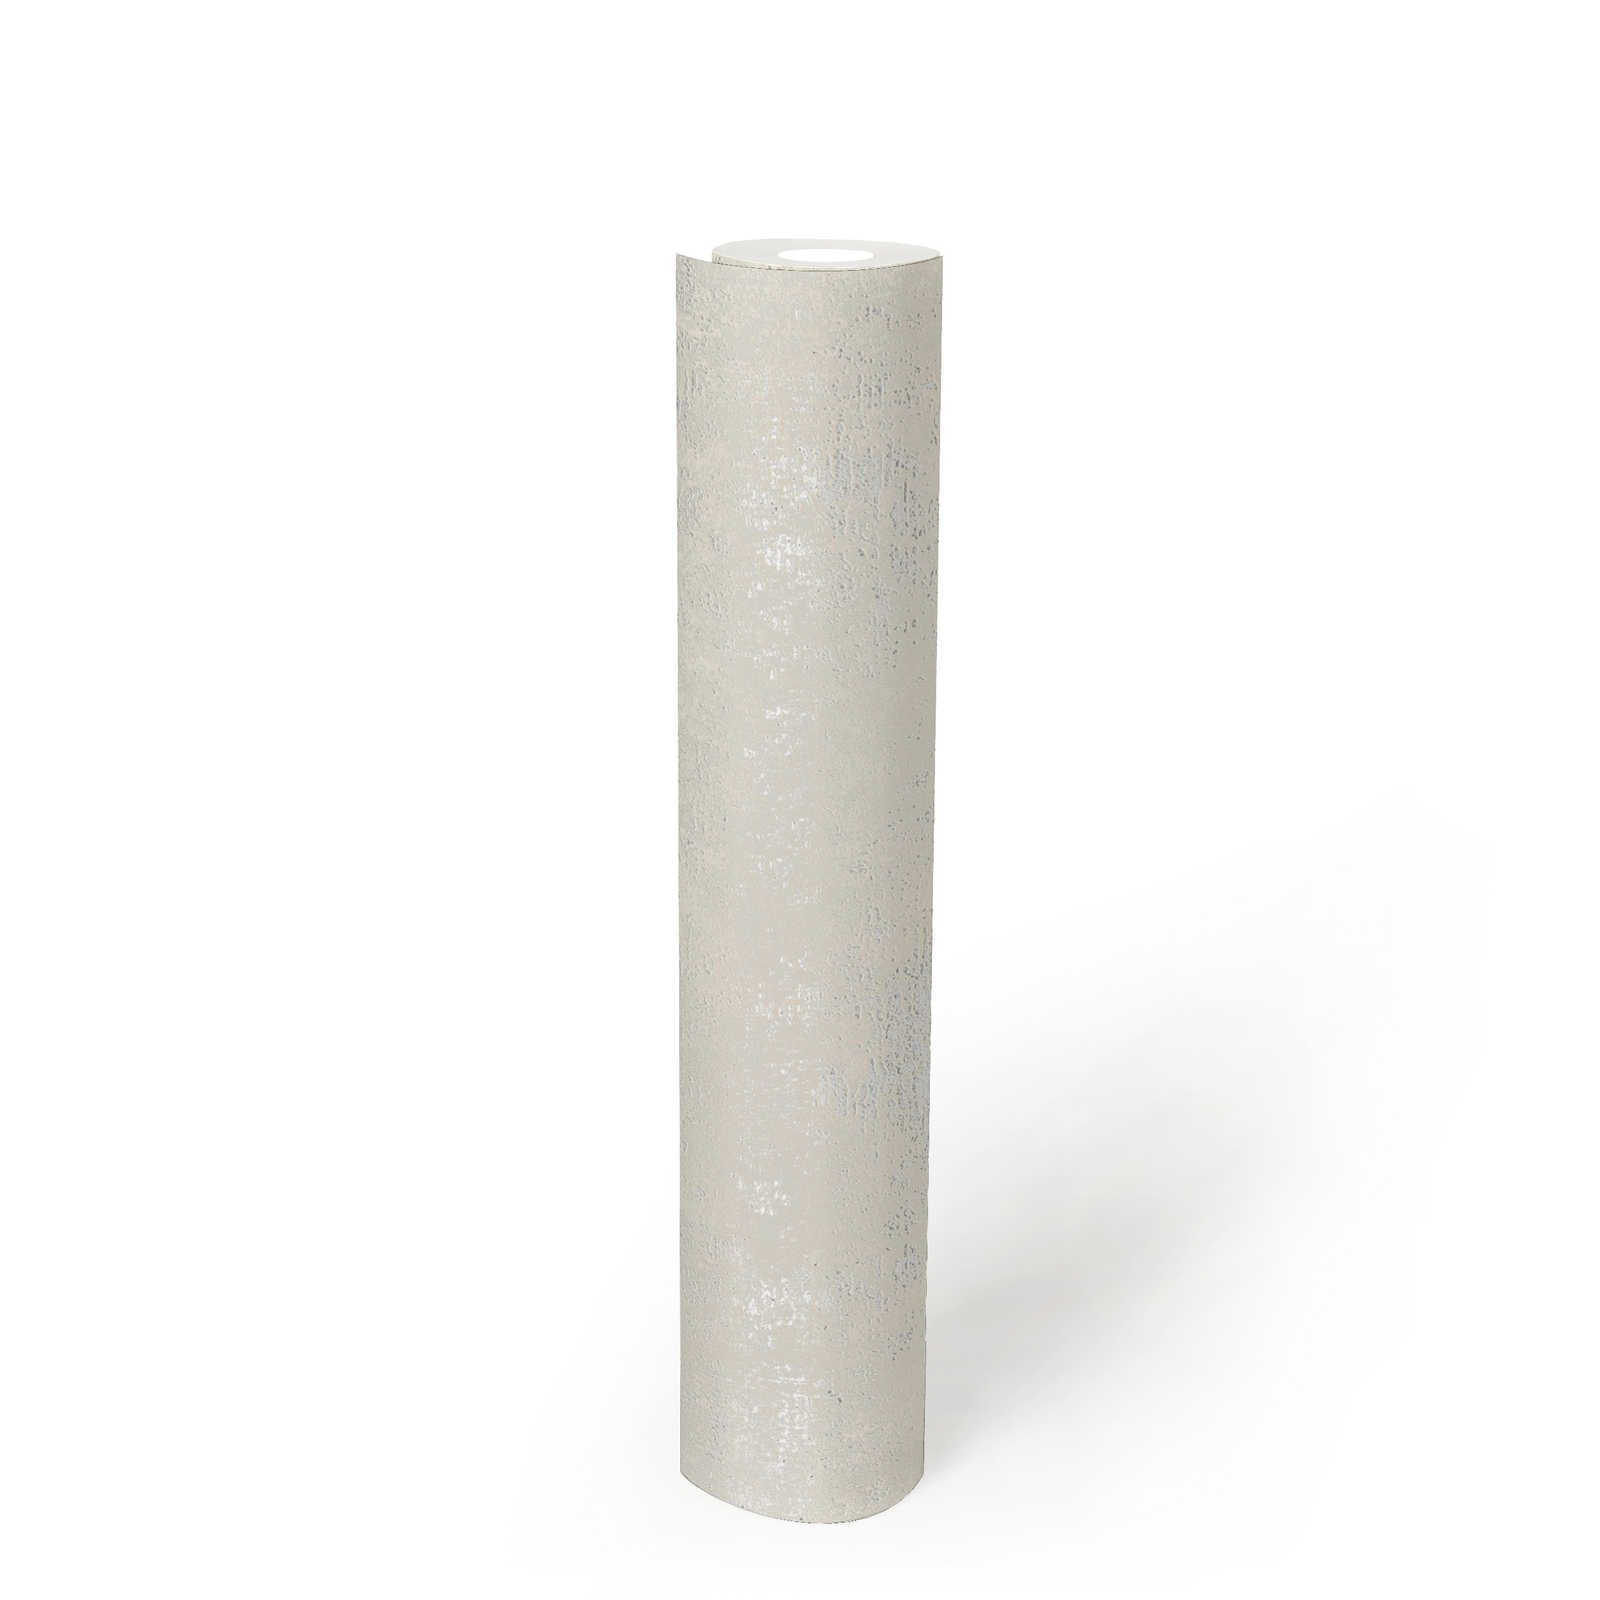             Crème wit behang met structuurdesign - crème, metallic
        